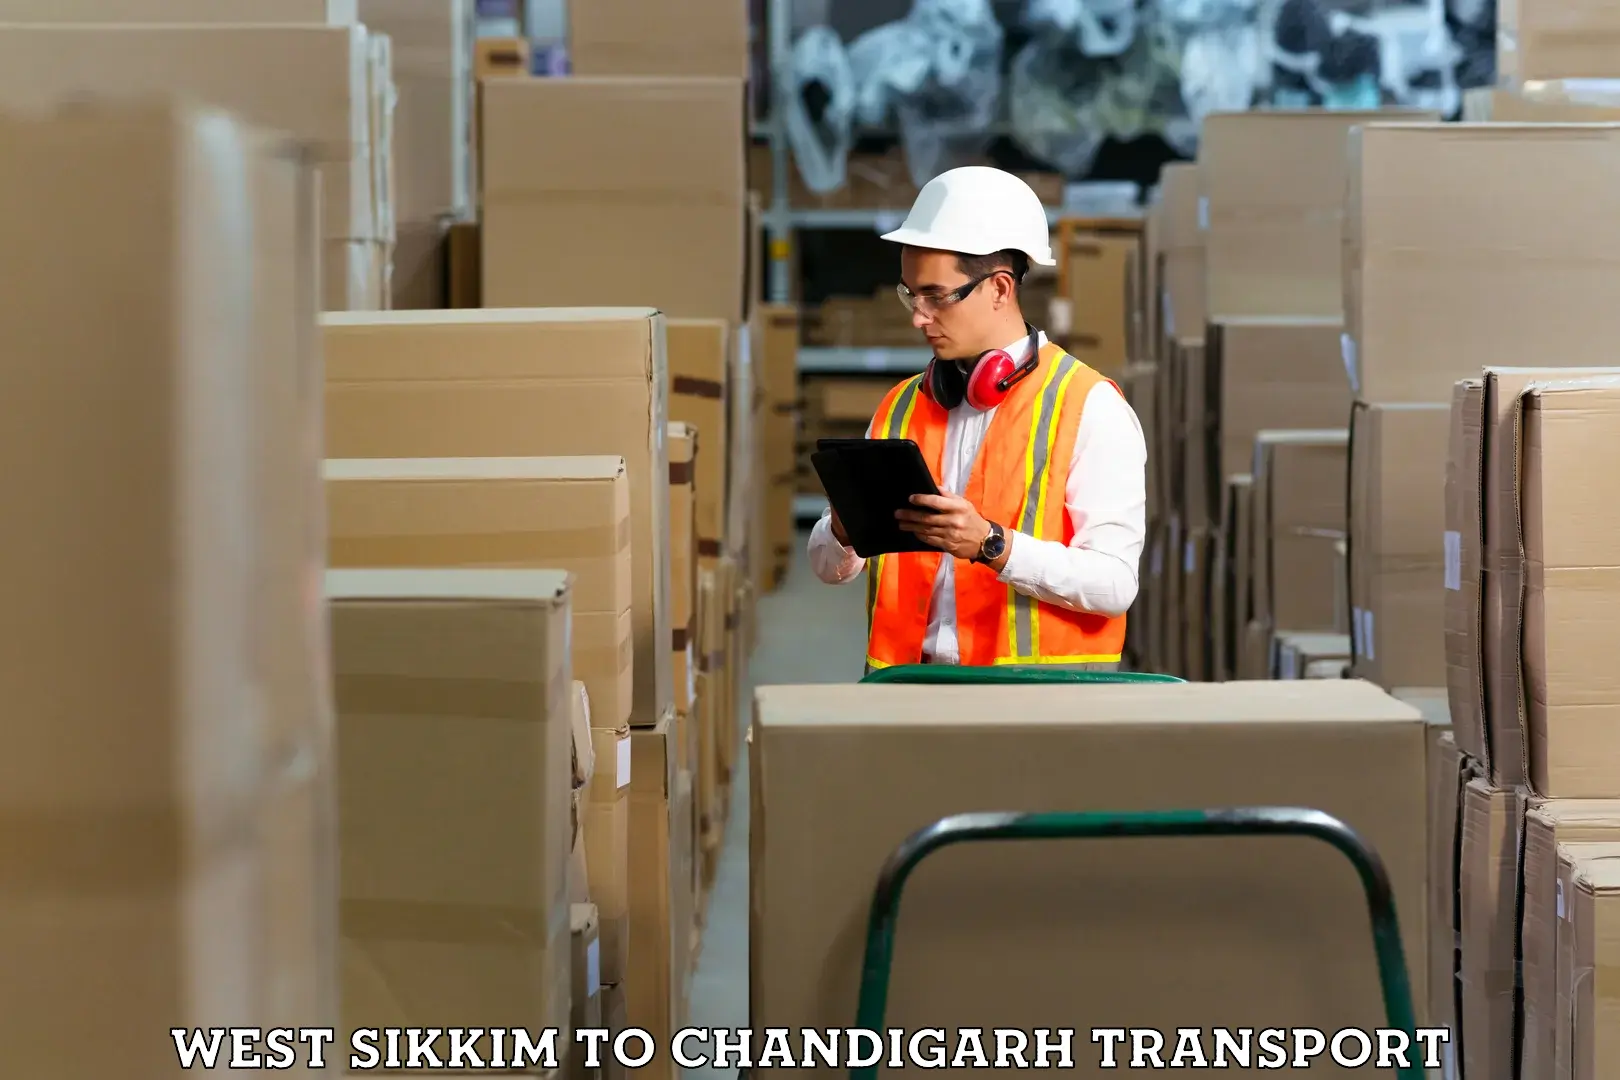 Online transport service West Sikkim to Chandigarh